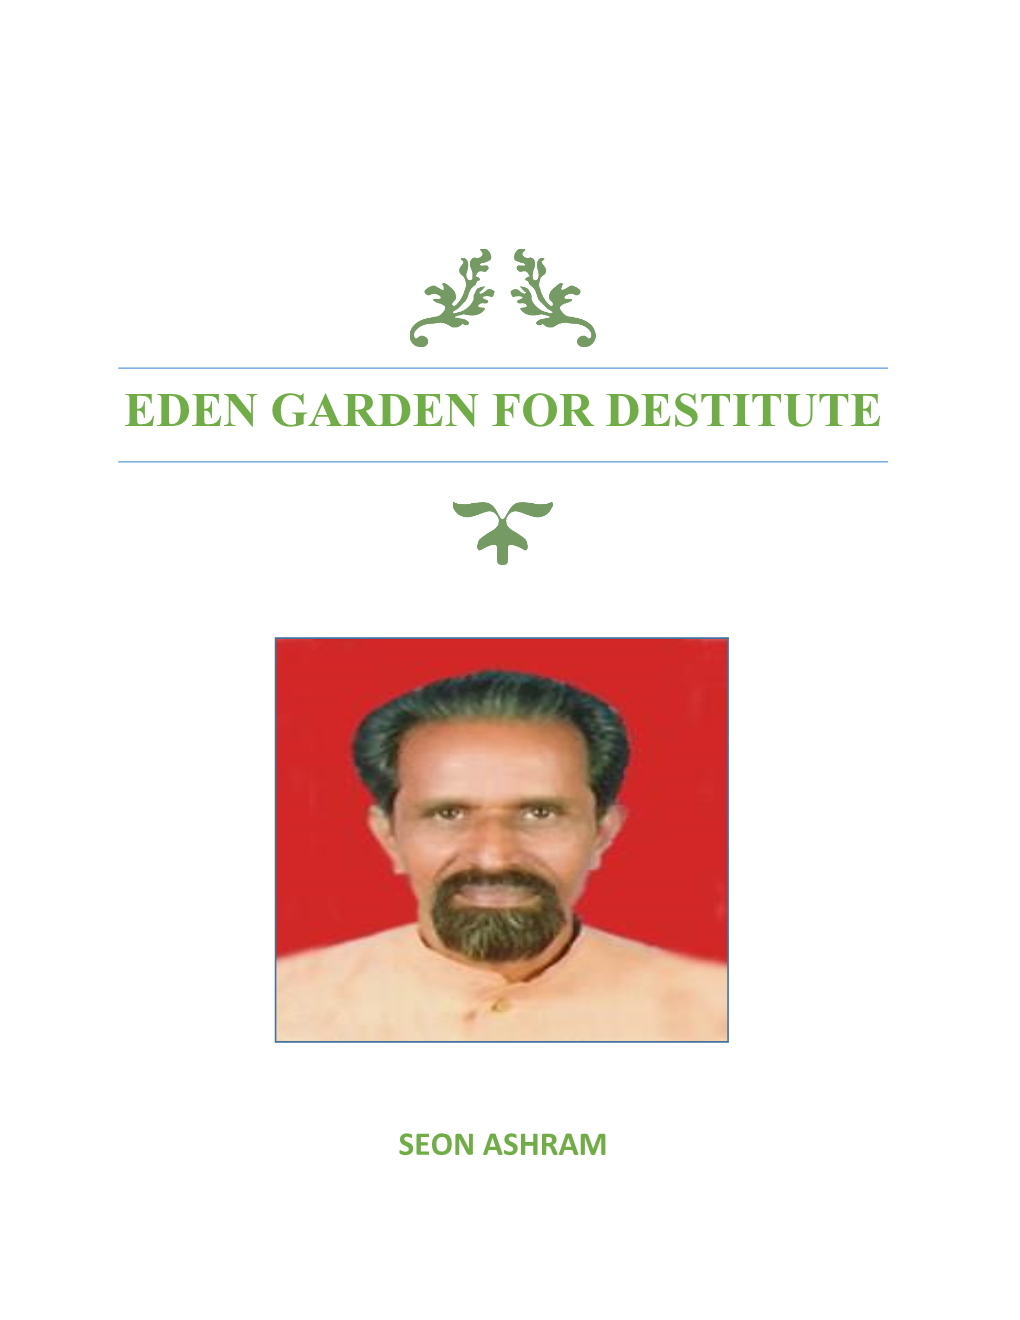 Eden Garden for Destitute